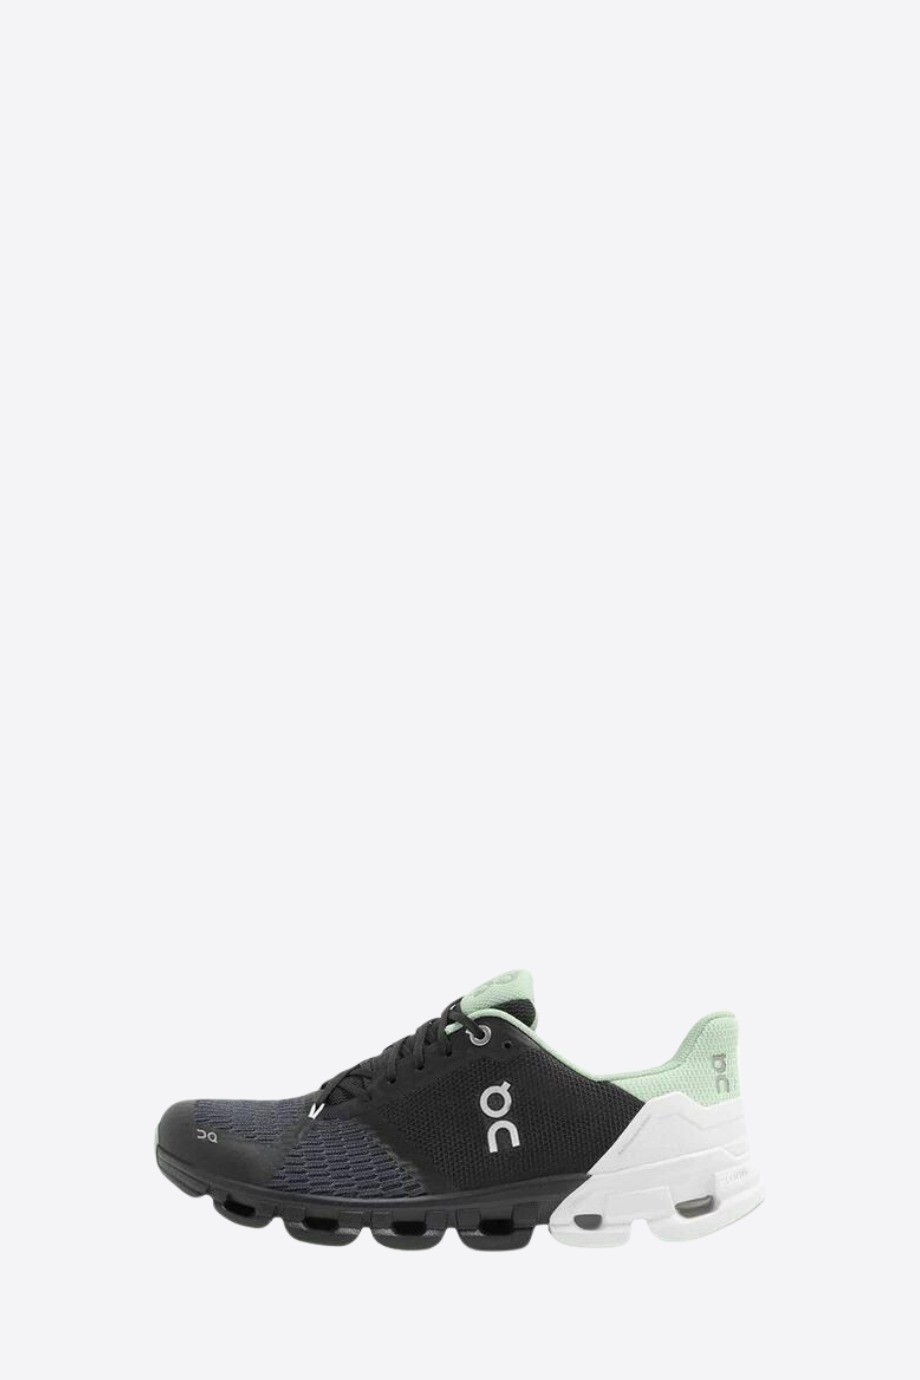 Cloudflyer Sneakers for Women - Black/Mint